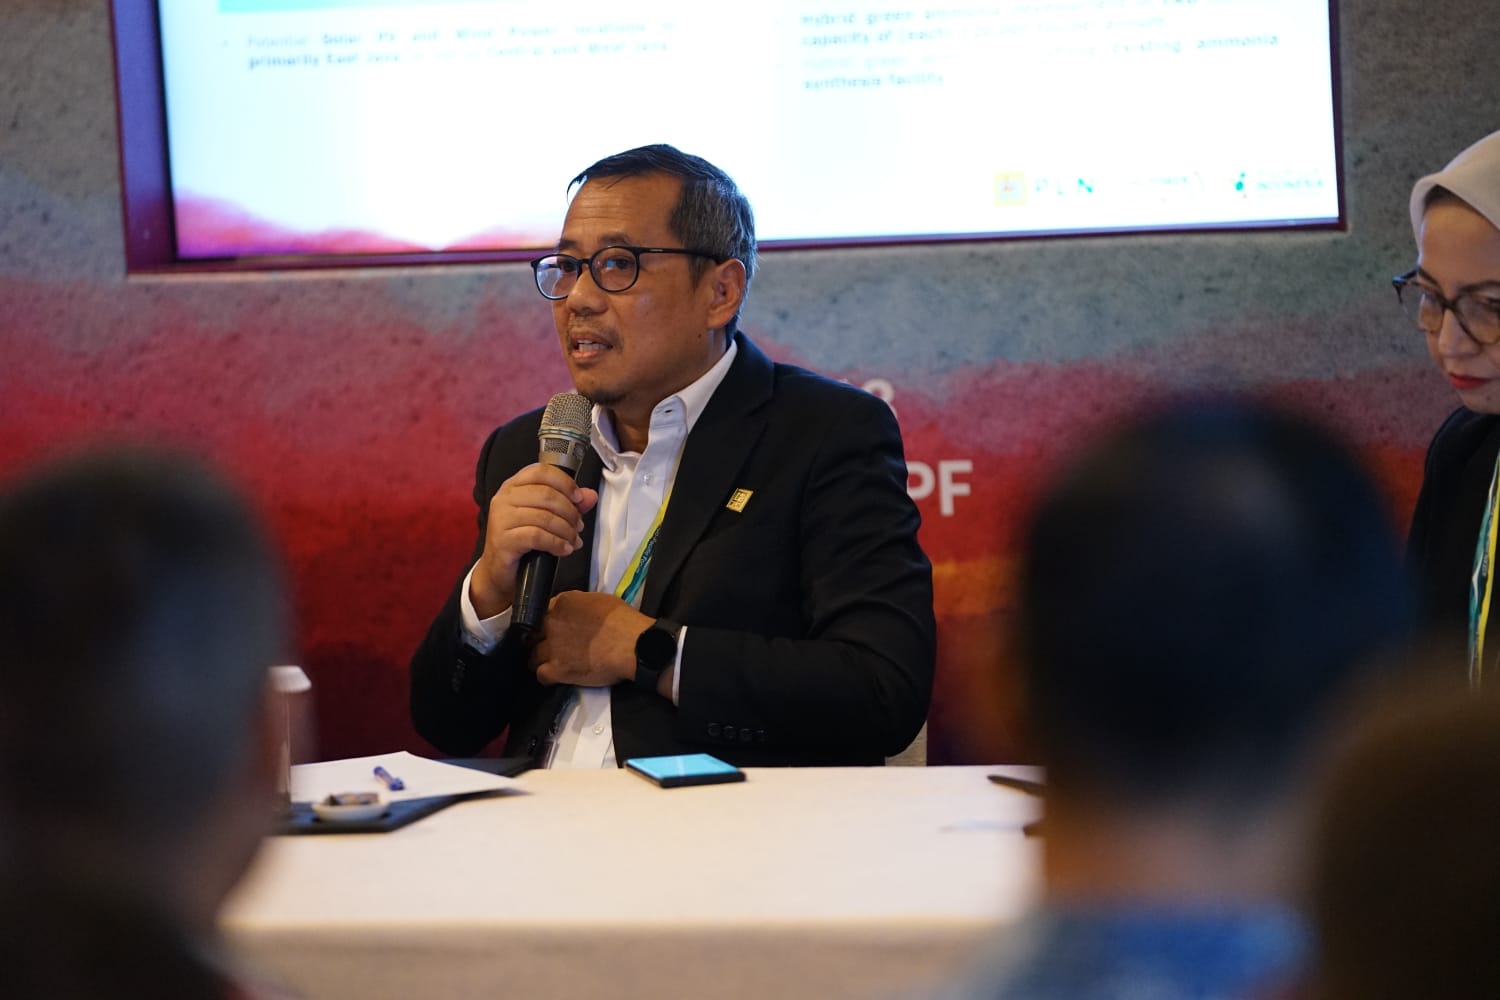 Kolaborasi Global, PLN Gandeng Pupuk Indonesia dan ACWA Power Siap Bangun Pabrik Hidrogen Terbesar di Indonesia